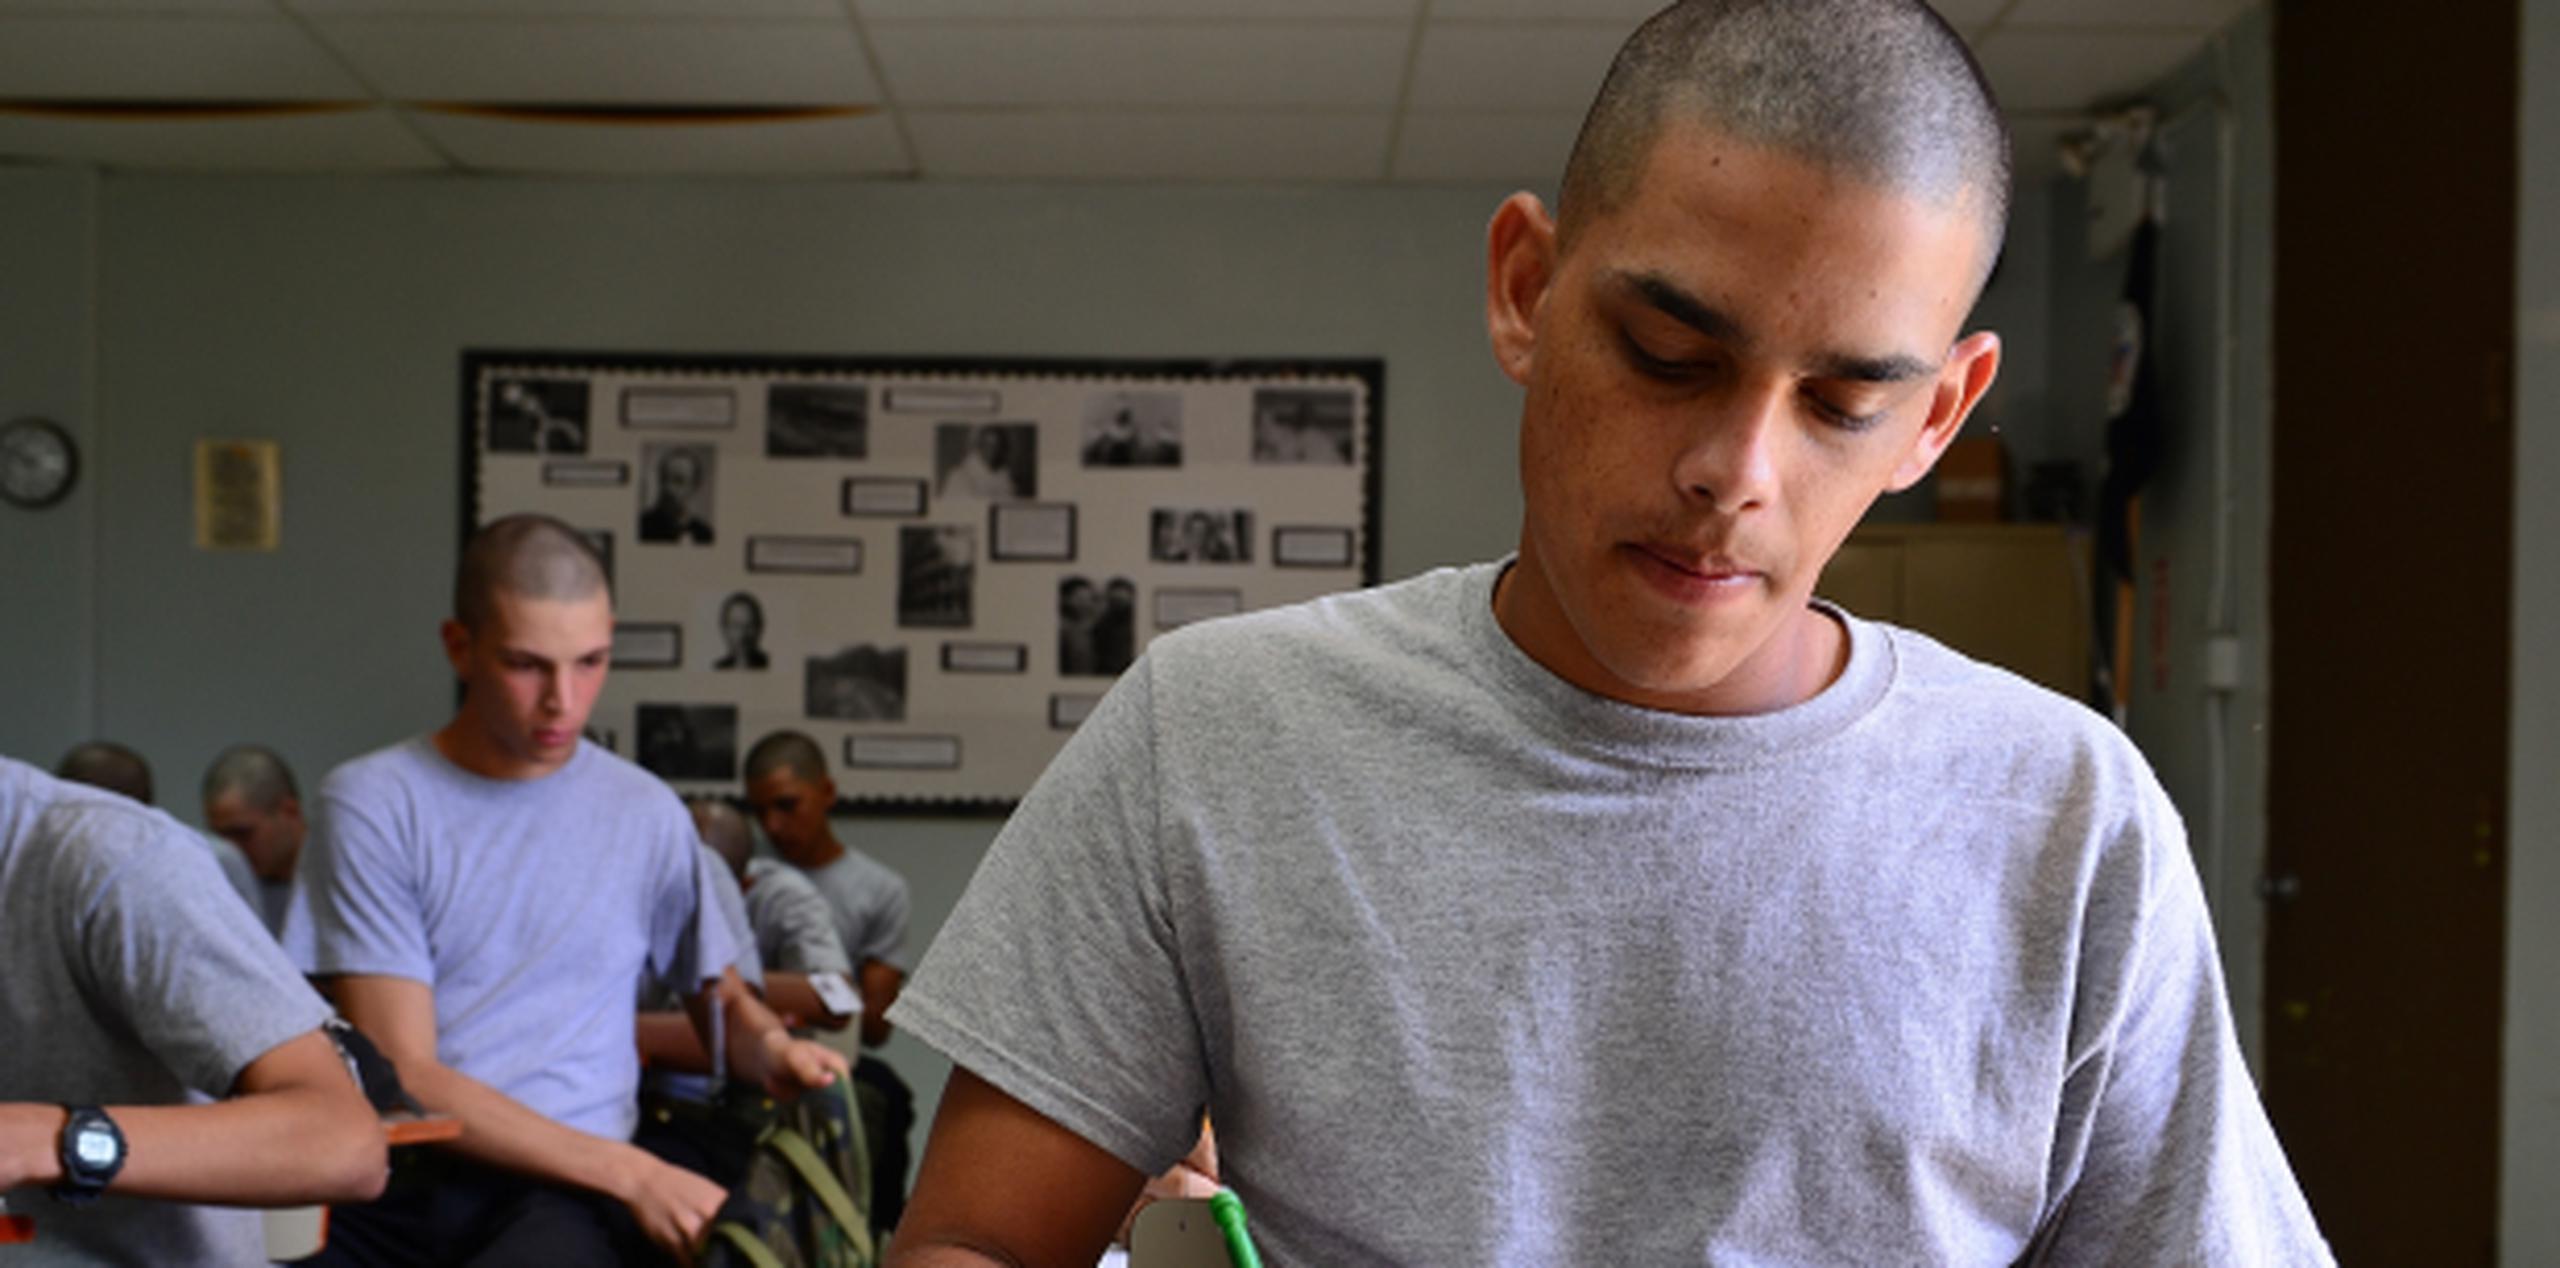 El Programa ChalleNGe, que está suscrito a la Guardia Nacional de Puerto Rico desde hace cerca de 15 años, recibe a desertores escolares voluntarios que quieren terminar el nivel escolar superior. (Archivo)